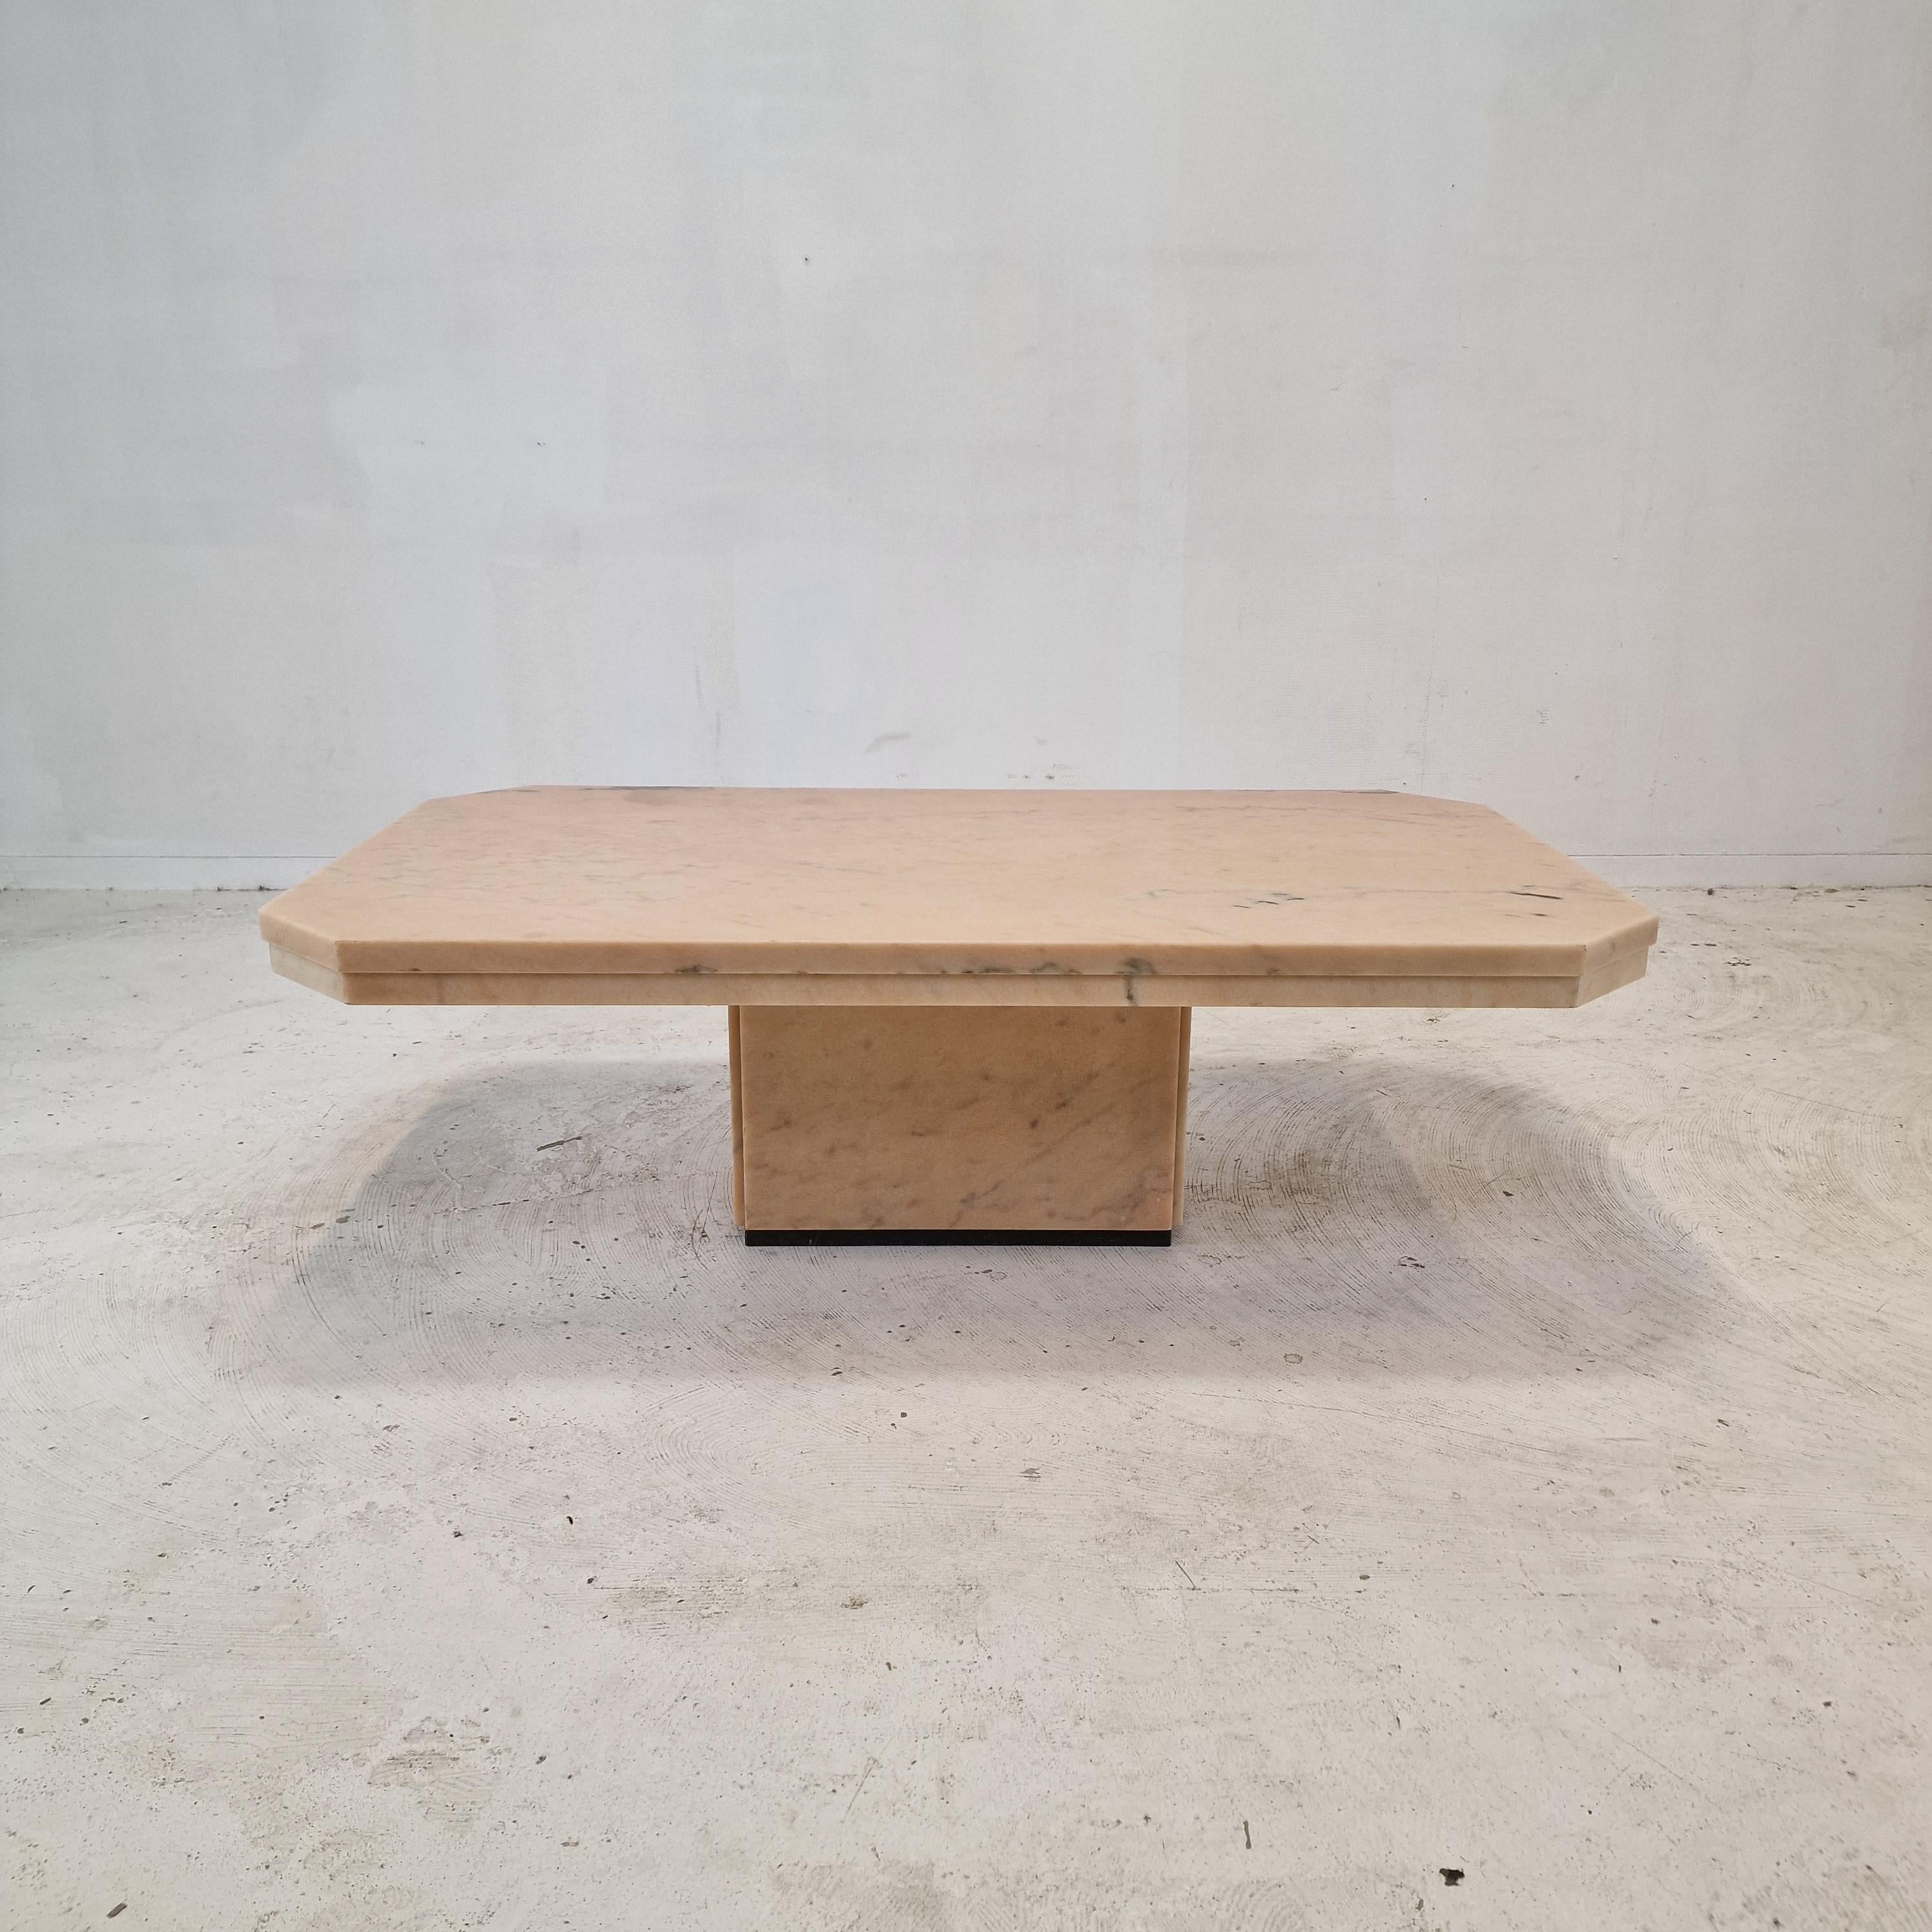 Très belle table basse italienne, fabriquée au début des années 1980.

Il est fabriqué à la main à partir d'un très beau marbre.
Le fabuleux marbre présente un très beau motif de différentes couleurs. 

Elle présente les traces normales